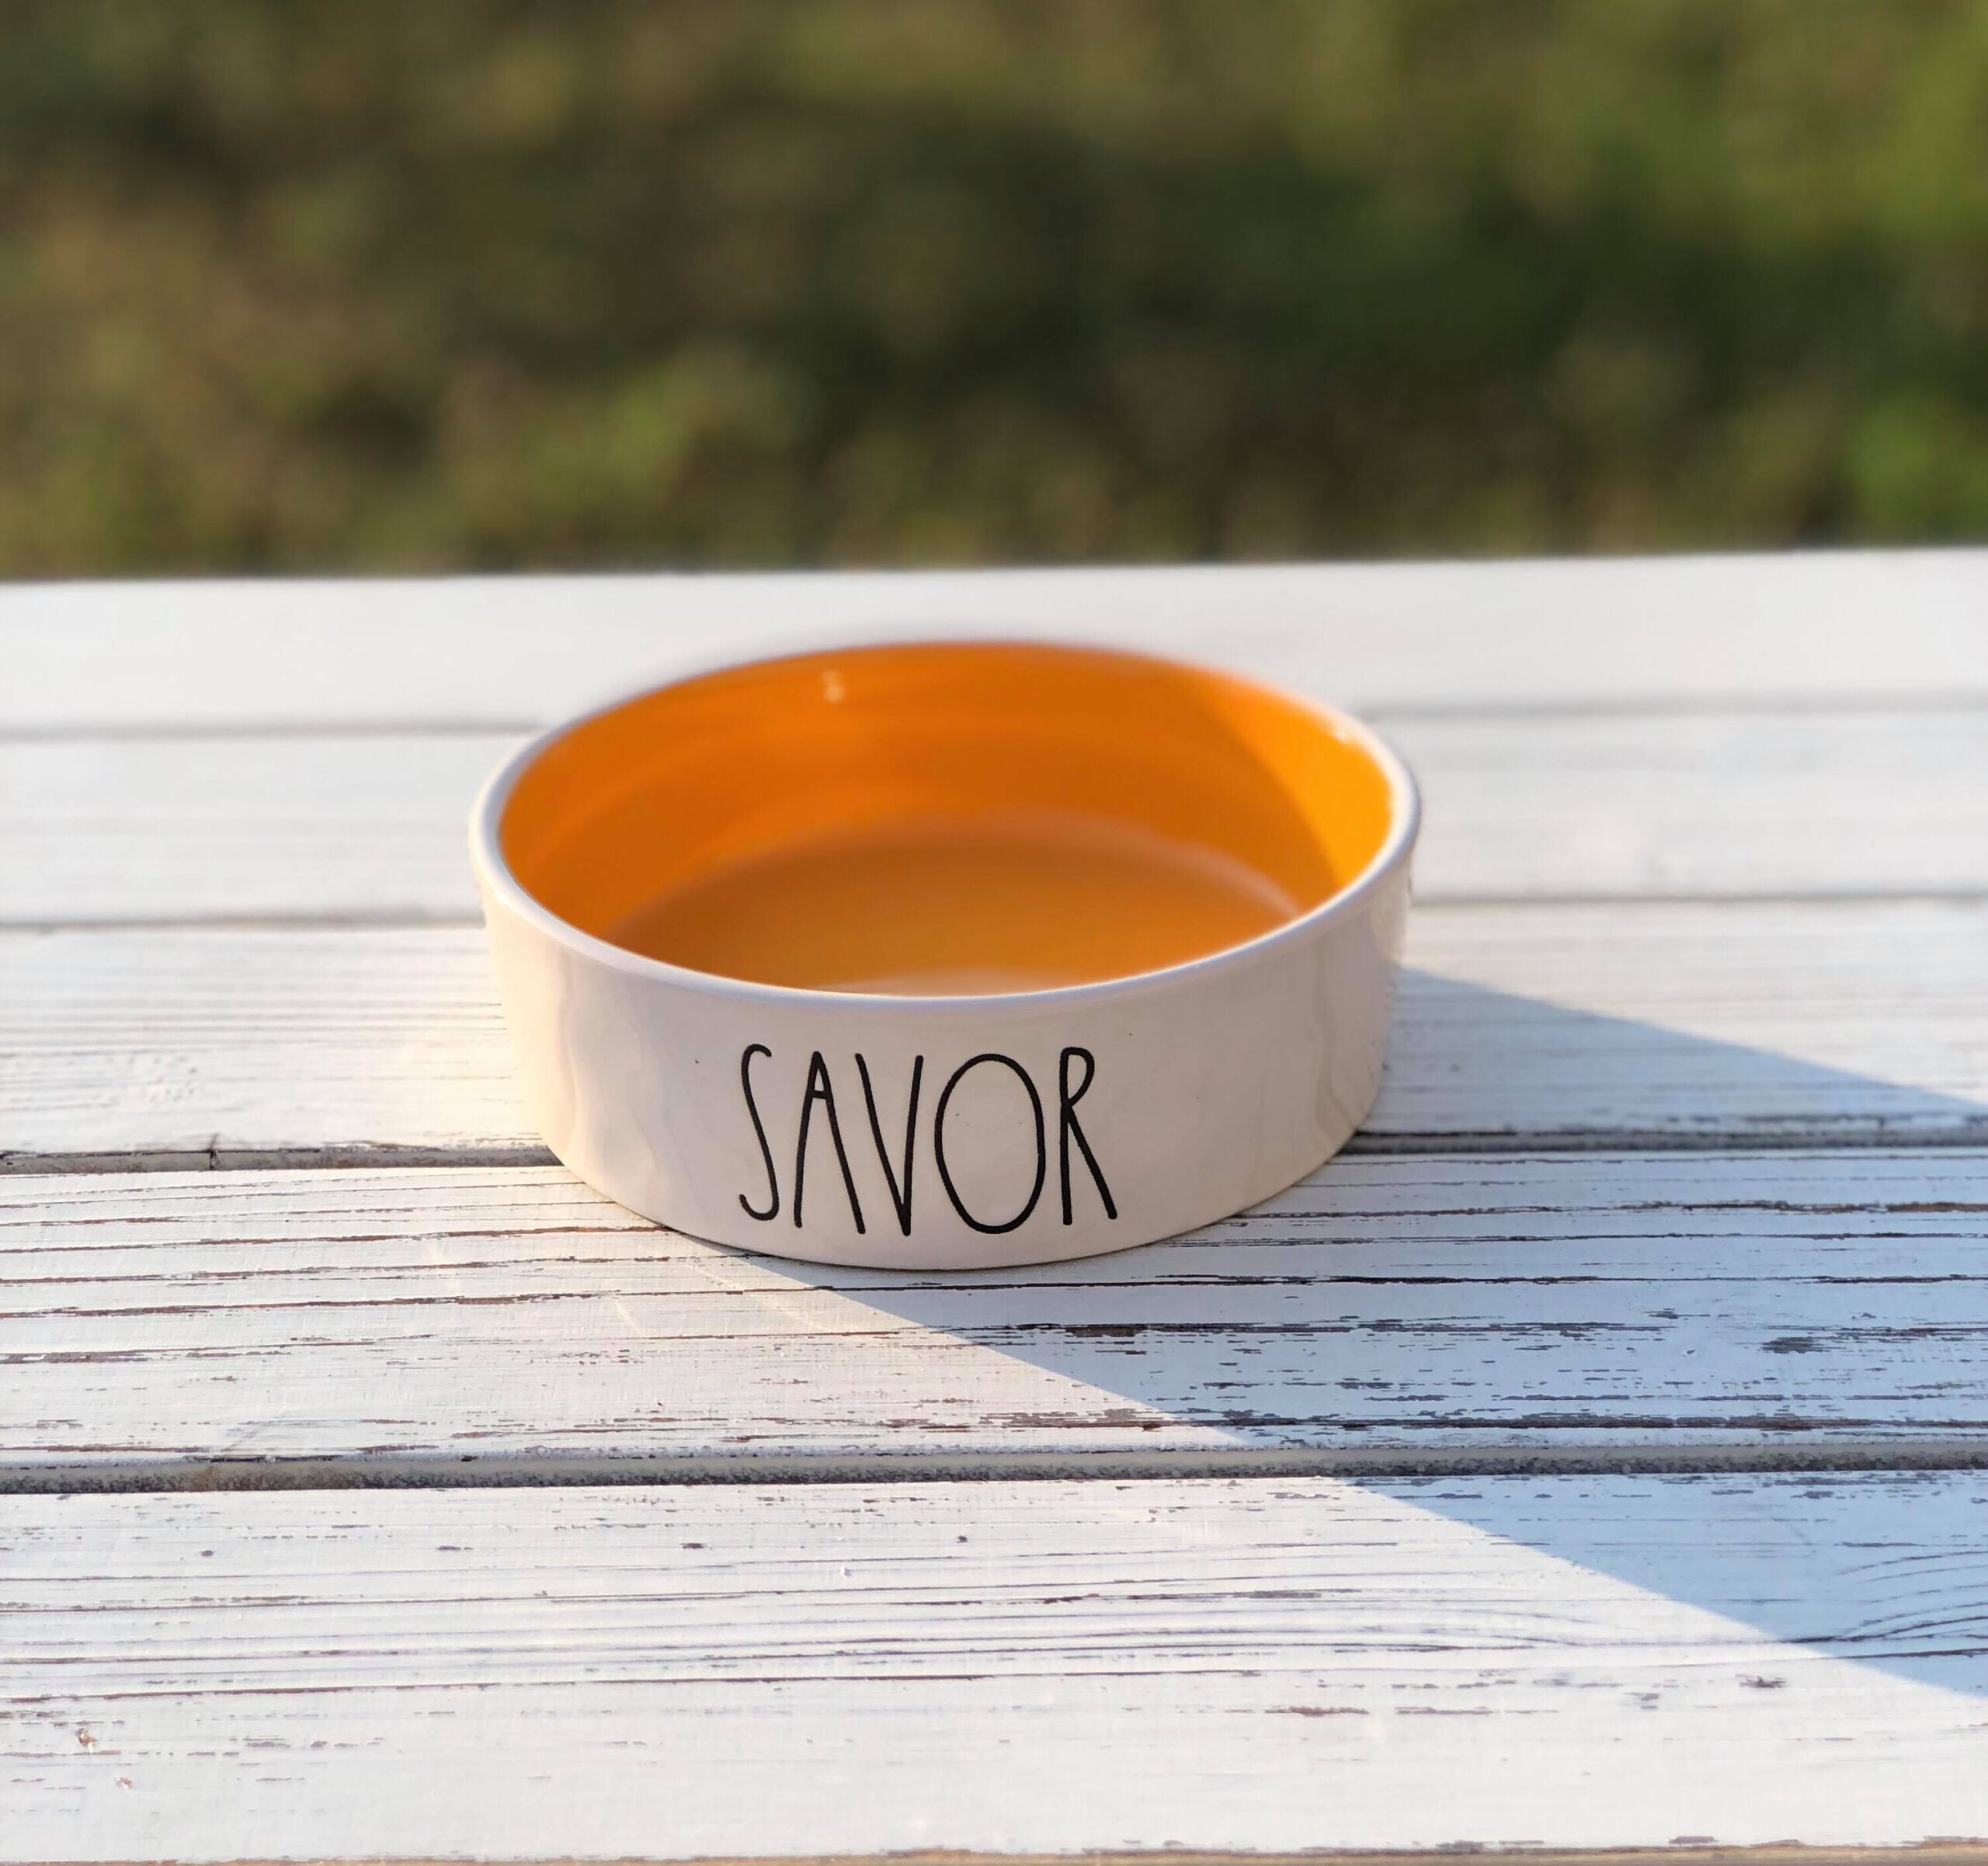 Savor – Rae Dunn Pet Food Bowl, Blanchard and Co.